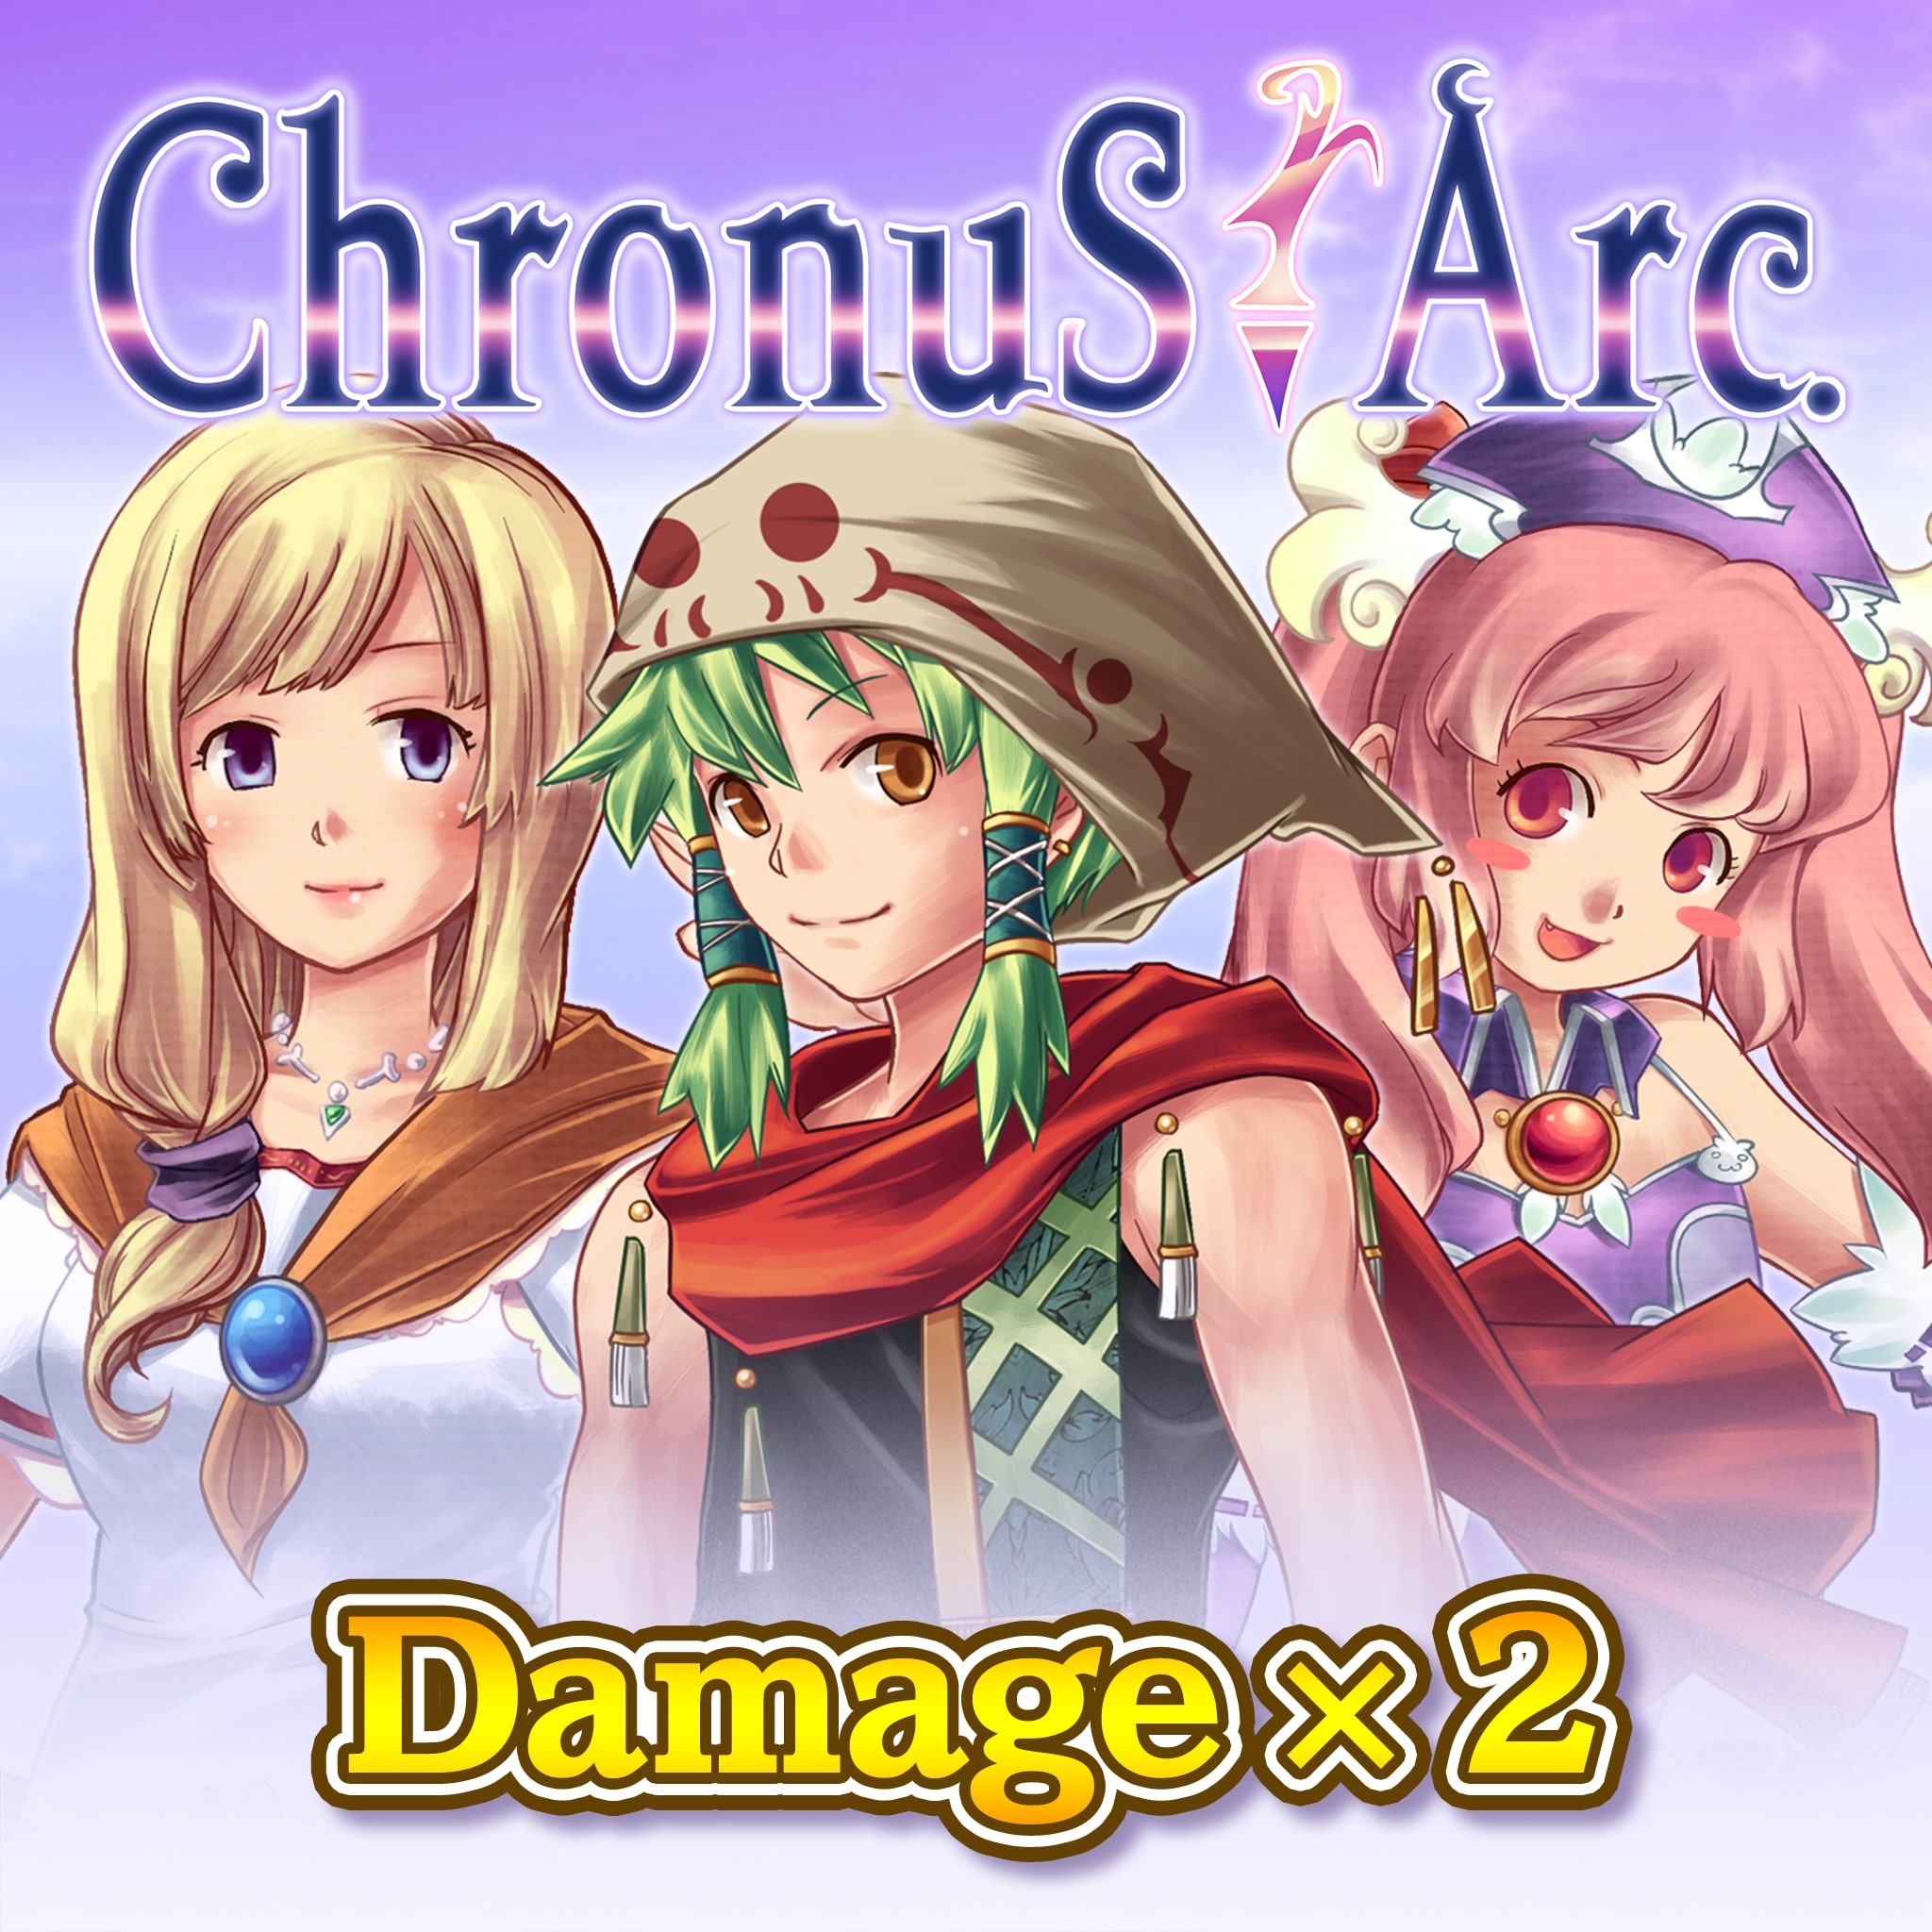 Damage x2 - Chronus Arc